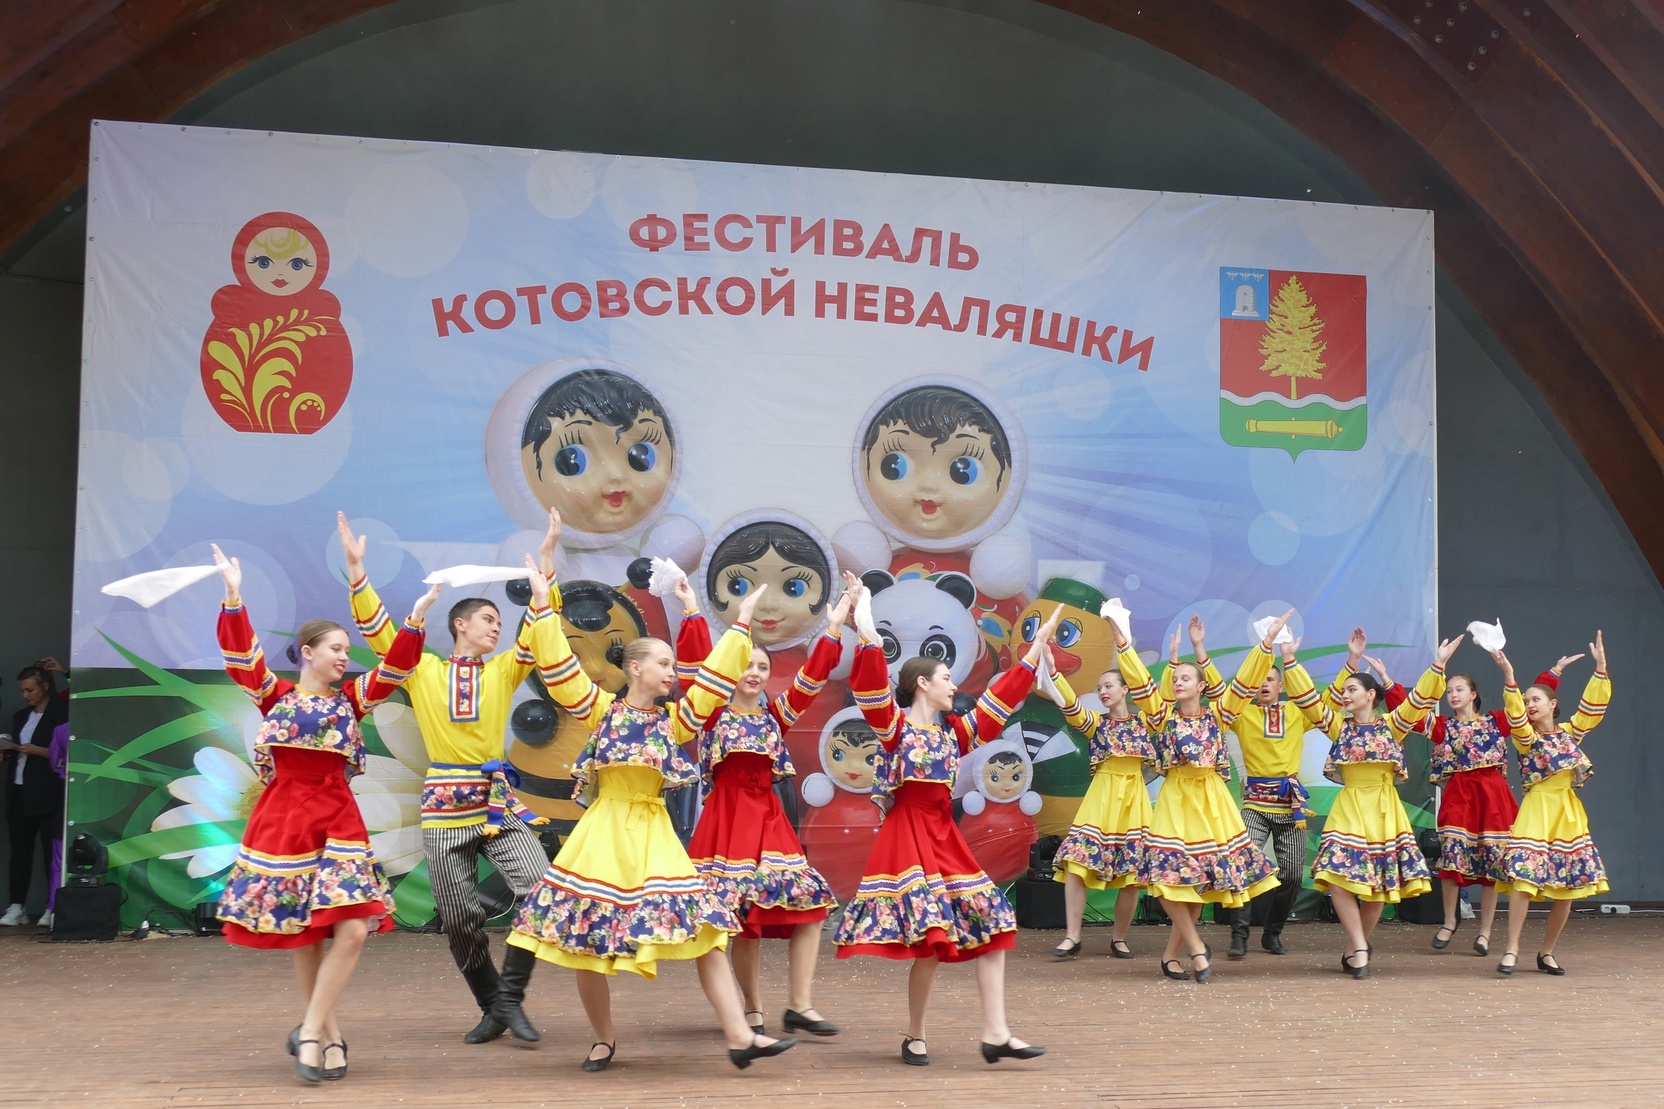 Фестиваль неваляшки в Котовске представит игрушки, подаренные известным людям